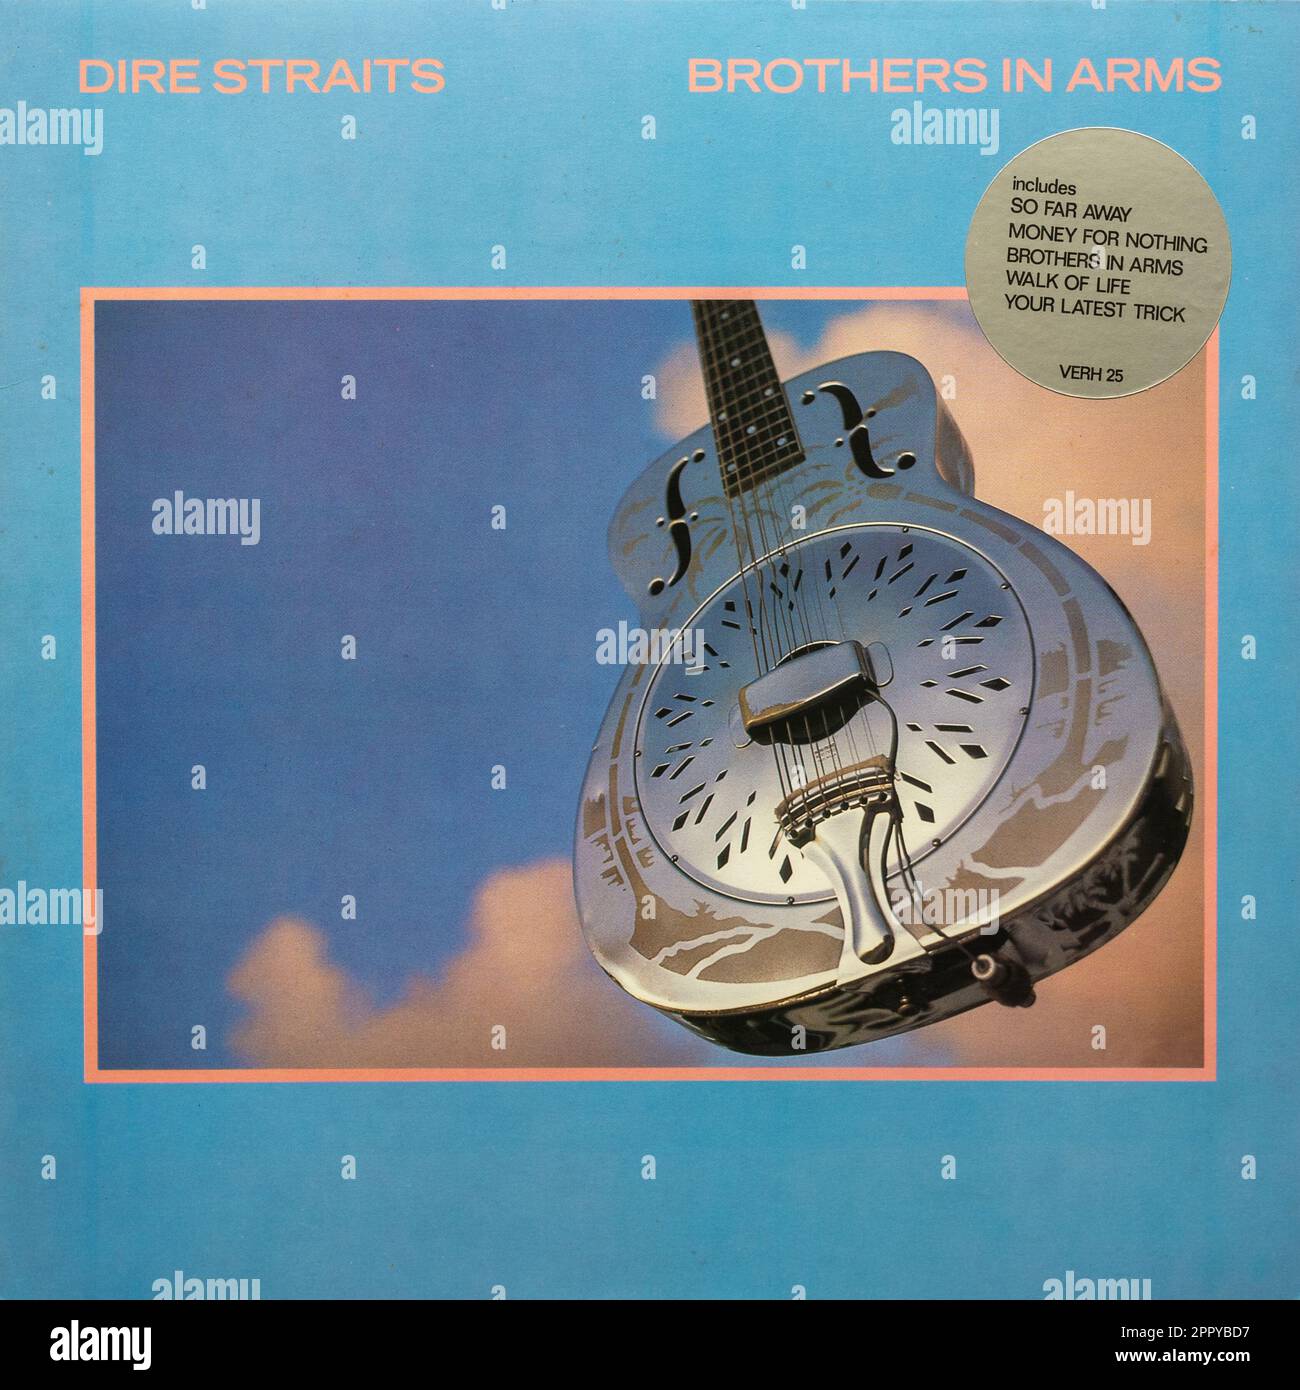 La couverture du disque de l'album en vinyle de Brothers in Arms par dire Straits, groupe de rock britannique, Royaume-Uni Banque D'Images